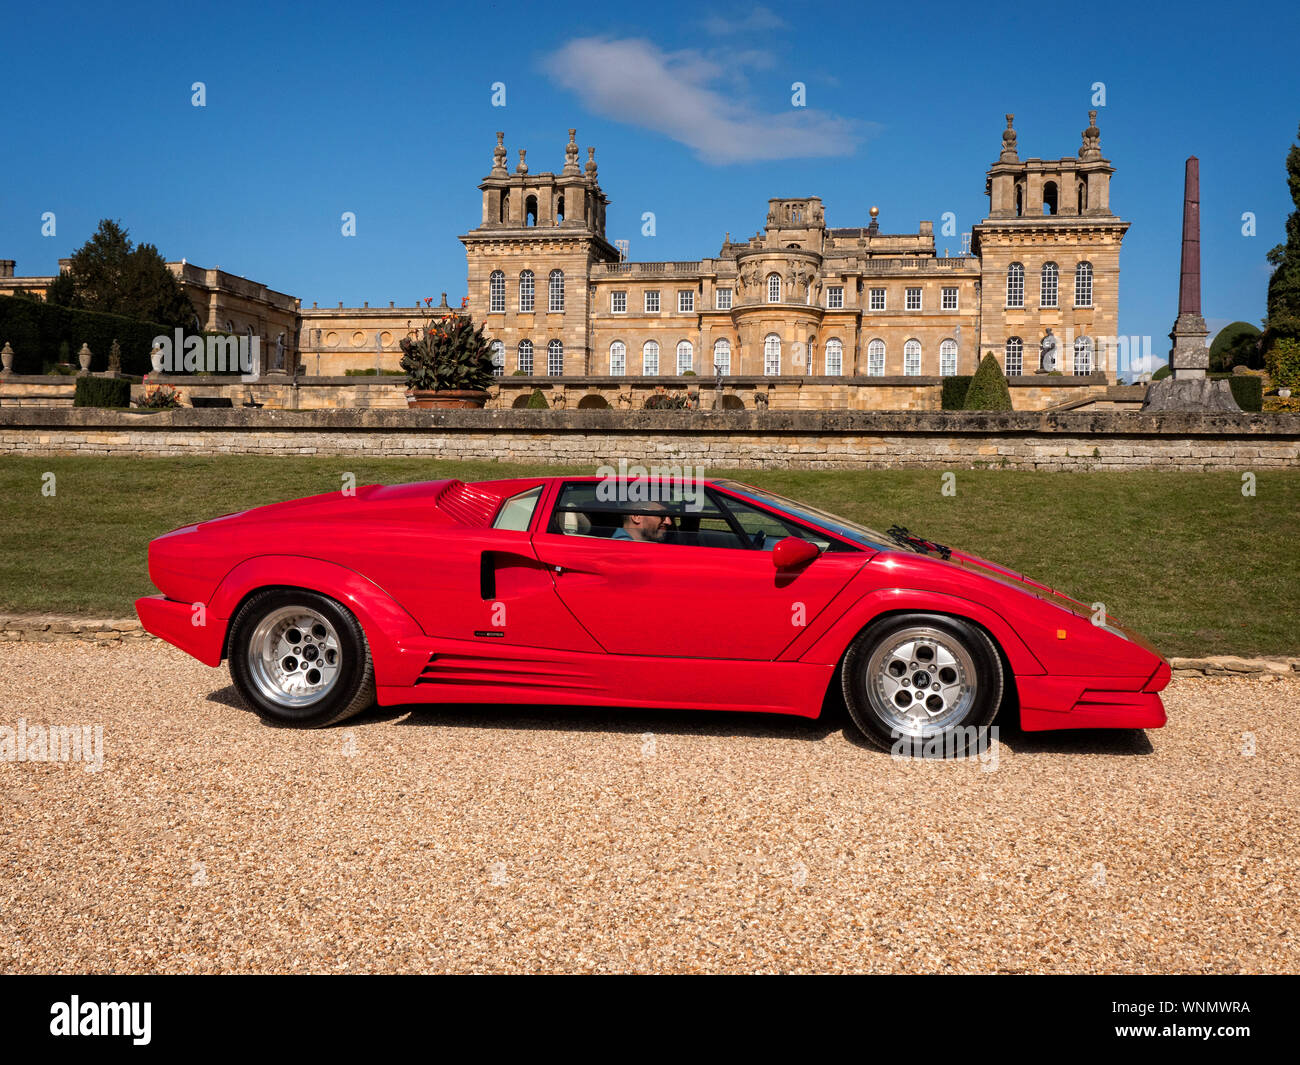 1990 Lamborghini Countach Aniversario en el Salón Prive el palacio de Blenheim 9/2019 Foto de stock